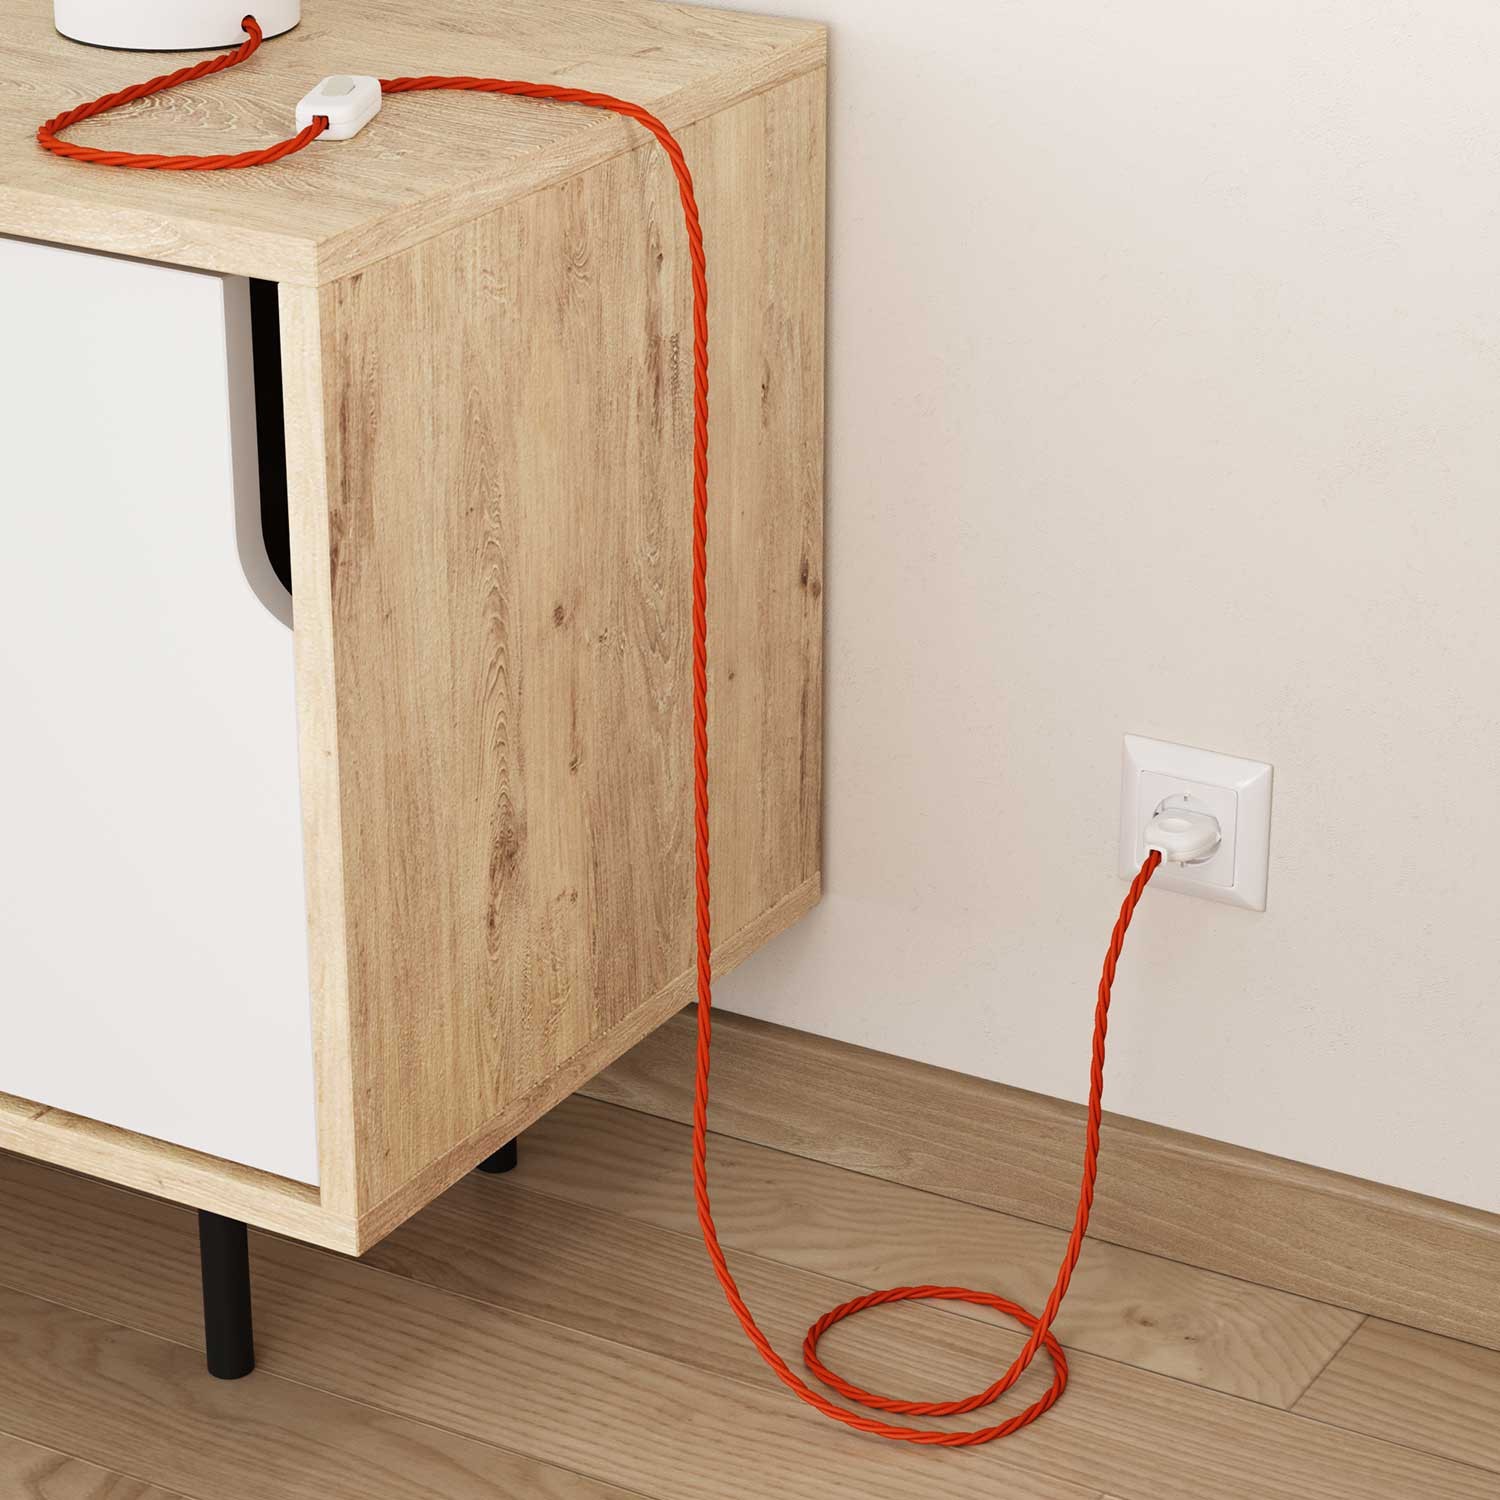 Stočený textilný elektrický kábel, umelý hodváb, jednofarebný, TM15 Oranžová